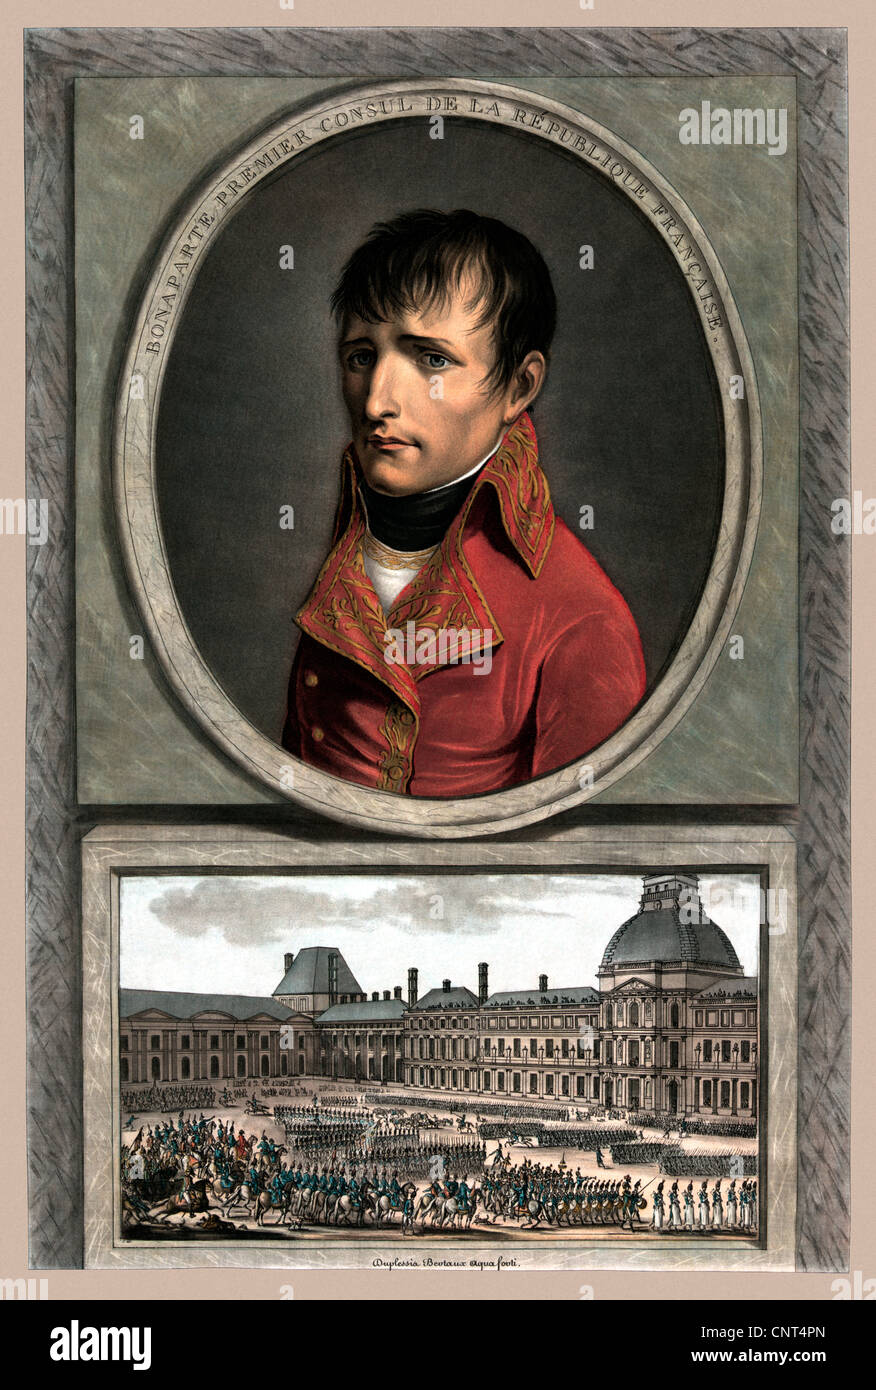 Vintage militärische Porträt von Napoleon Bonaparte oben ein Bild von einer Truppe Überprüfung. Stockfoto